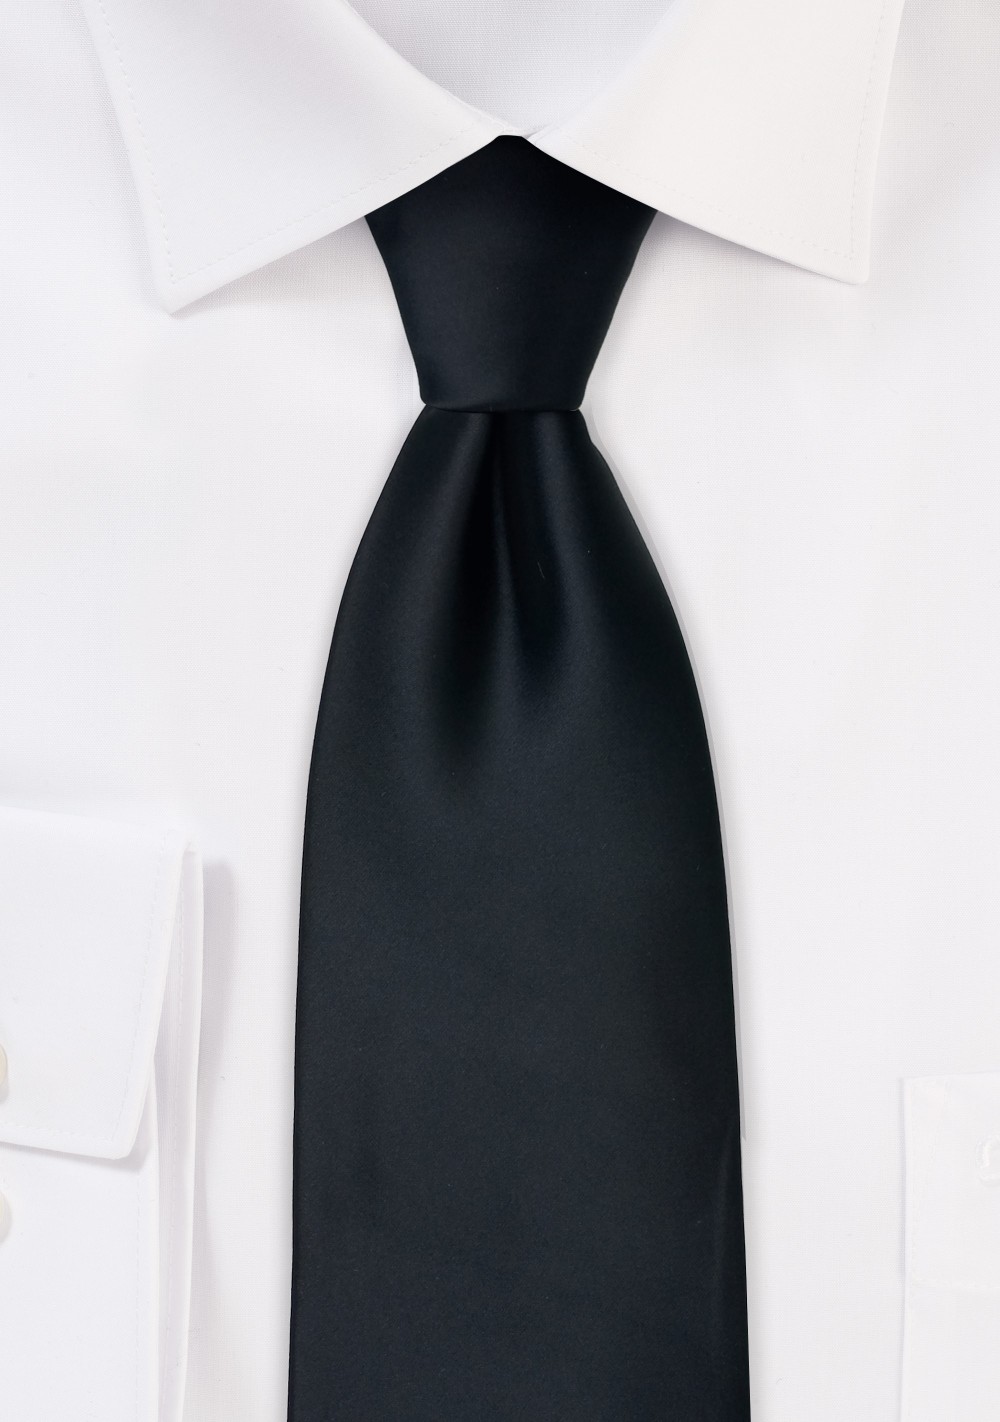 Extra long black tie - Formal XL necktie in black